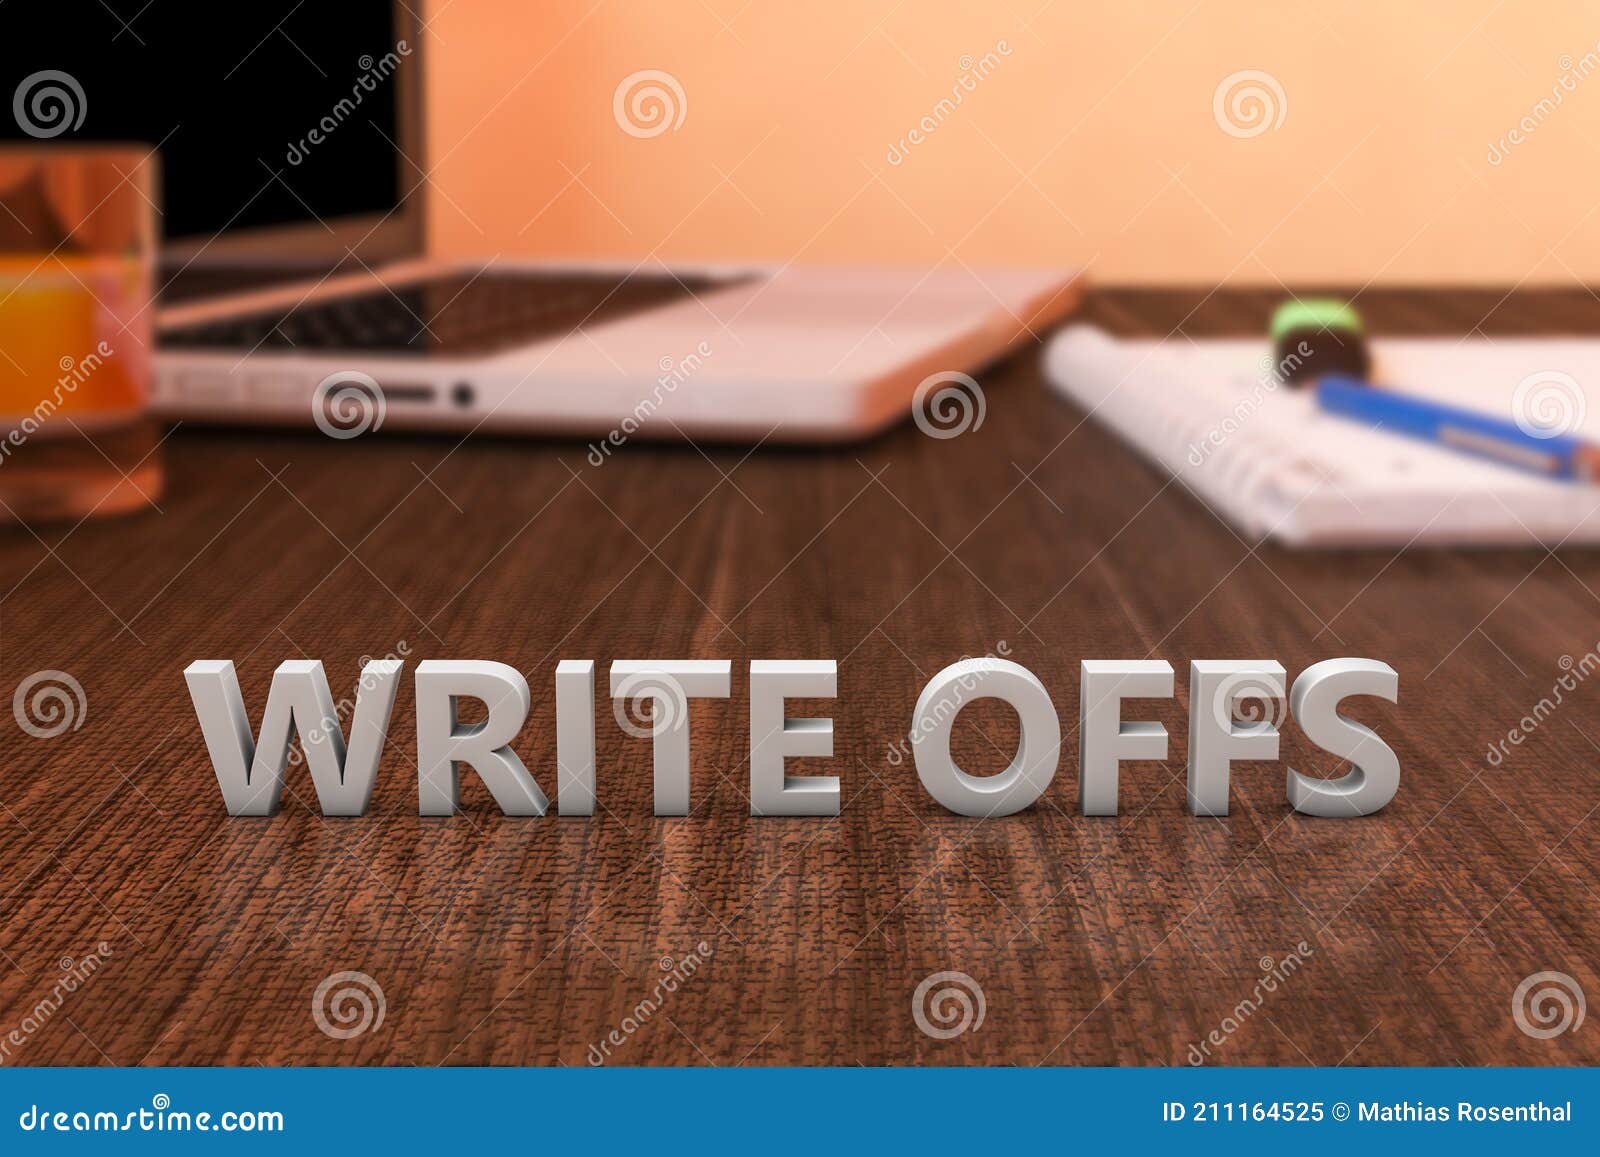 write offs